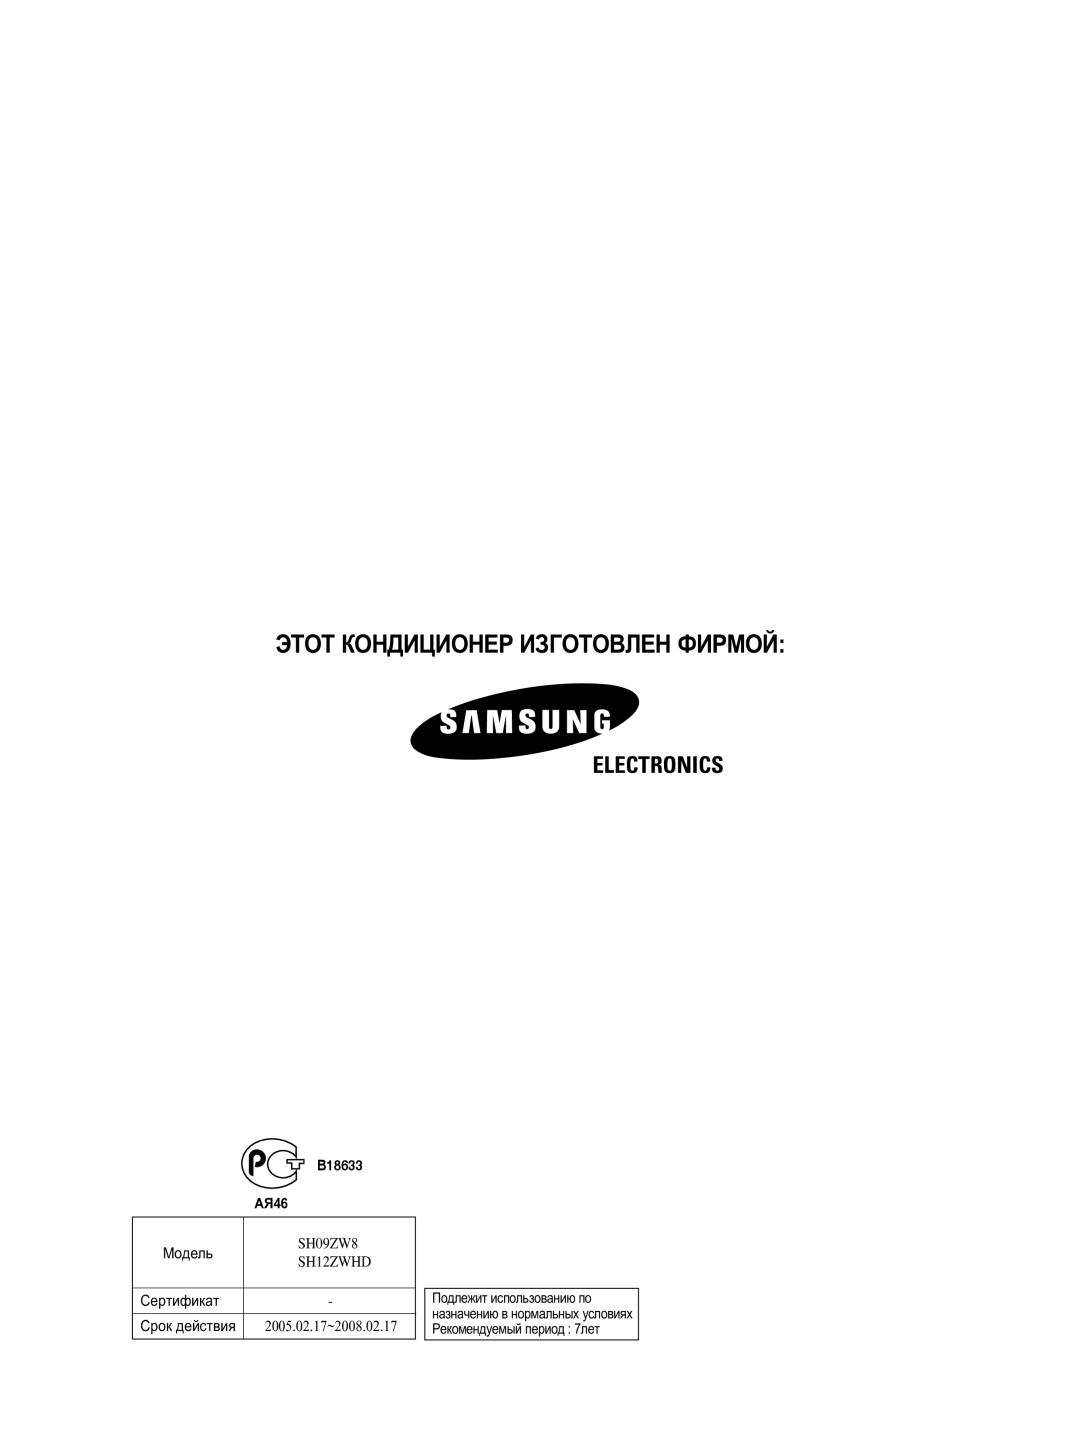 Samsung SH09ZW8/SER, SH12ZWHD/SER, SH09ZW8/XFO, SH12ZWHD/XFO manual ùíéí äéçÑàñàéçÖê àáÉéíéÇãÖç îàêåéâ, Electronics, B18633 